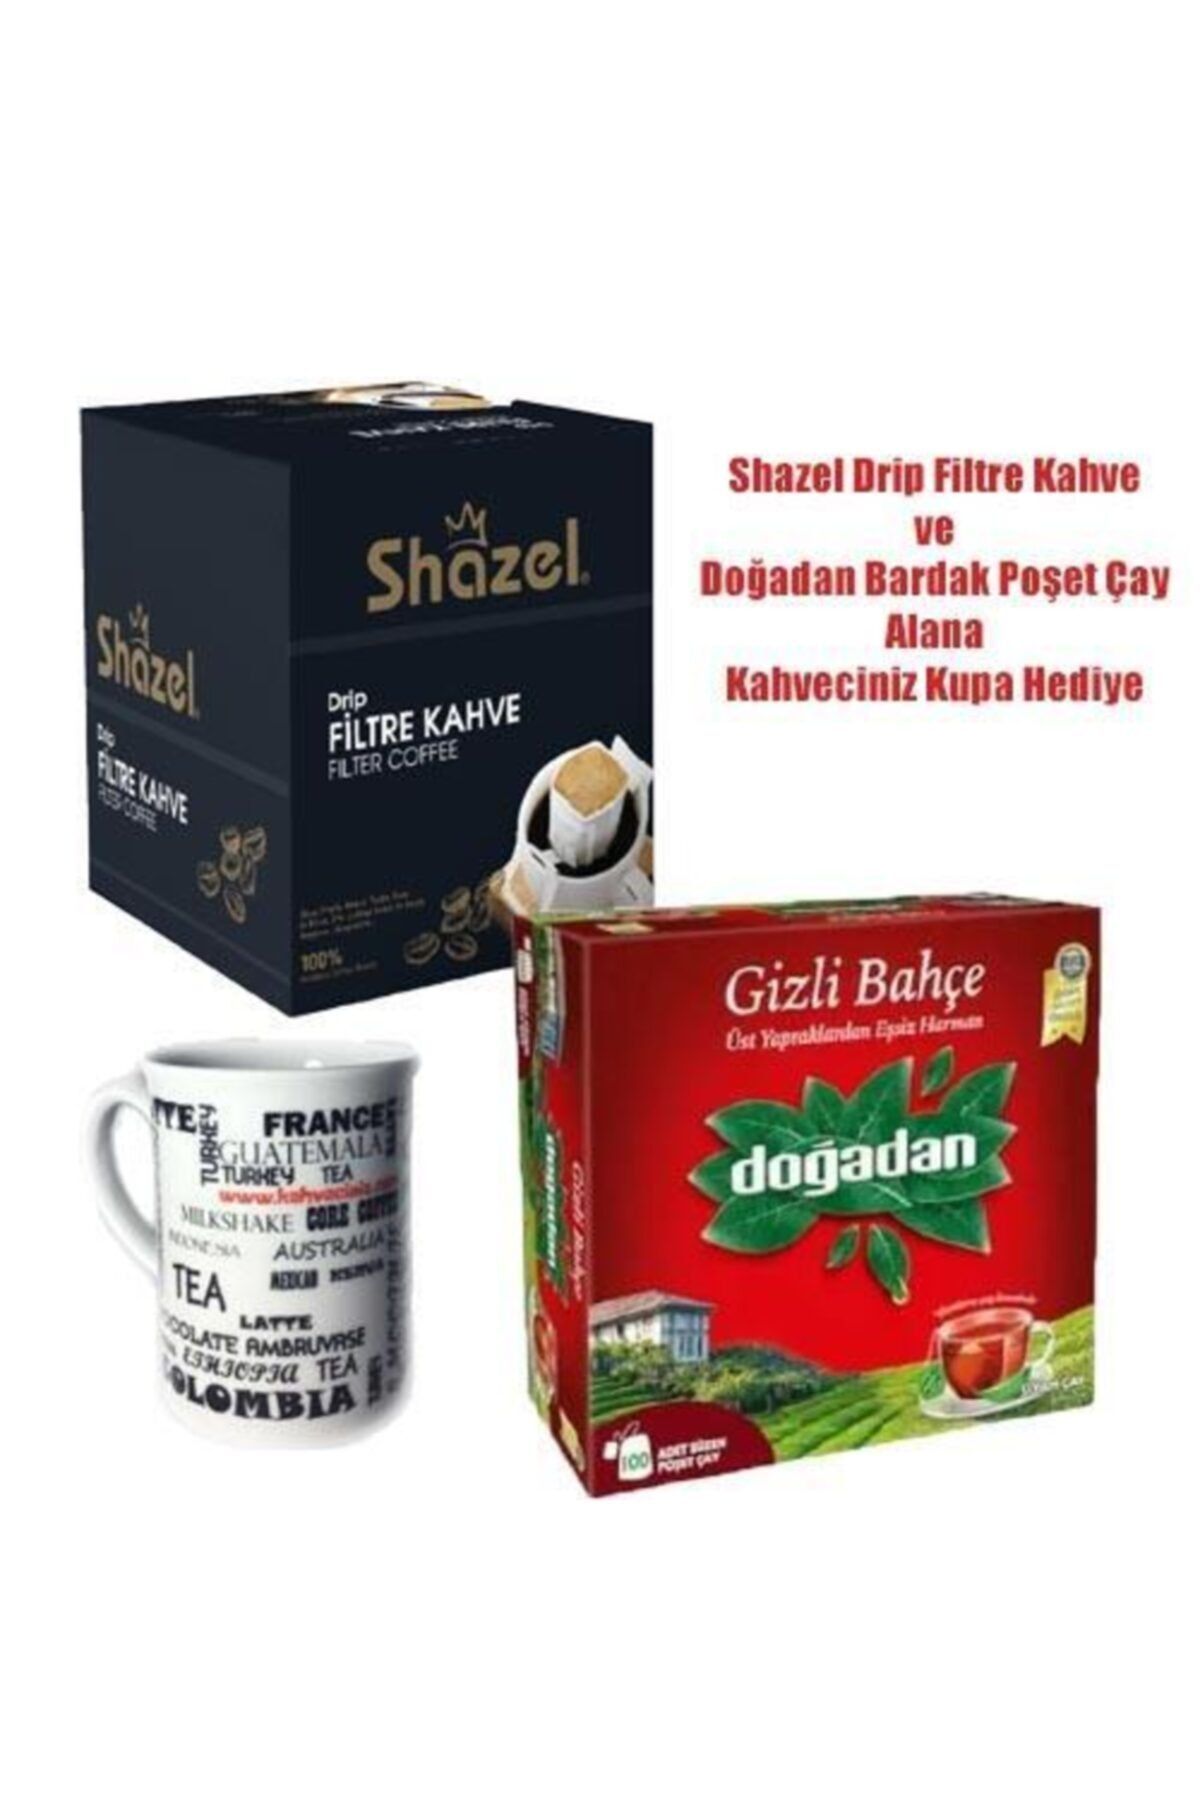 Shazel Drip Filtre Kahve & Doğadan Gizli Bahçe Çay Seti